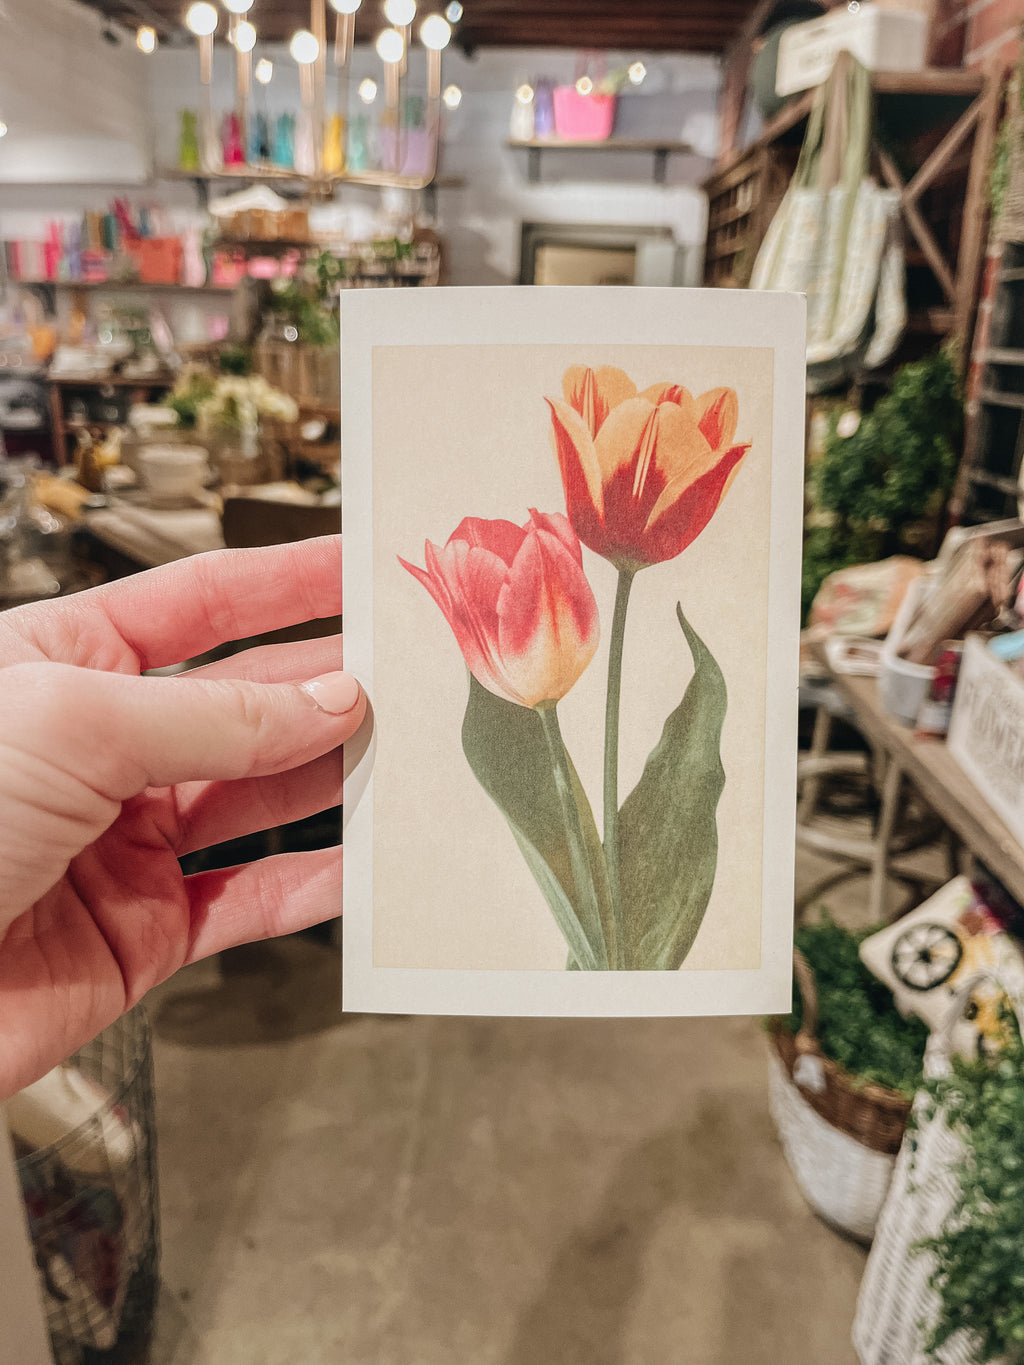 Tulips - Vintage Image, Postcard